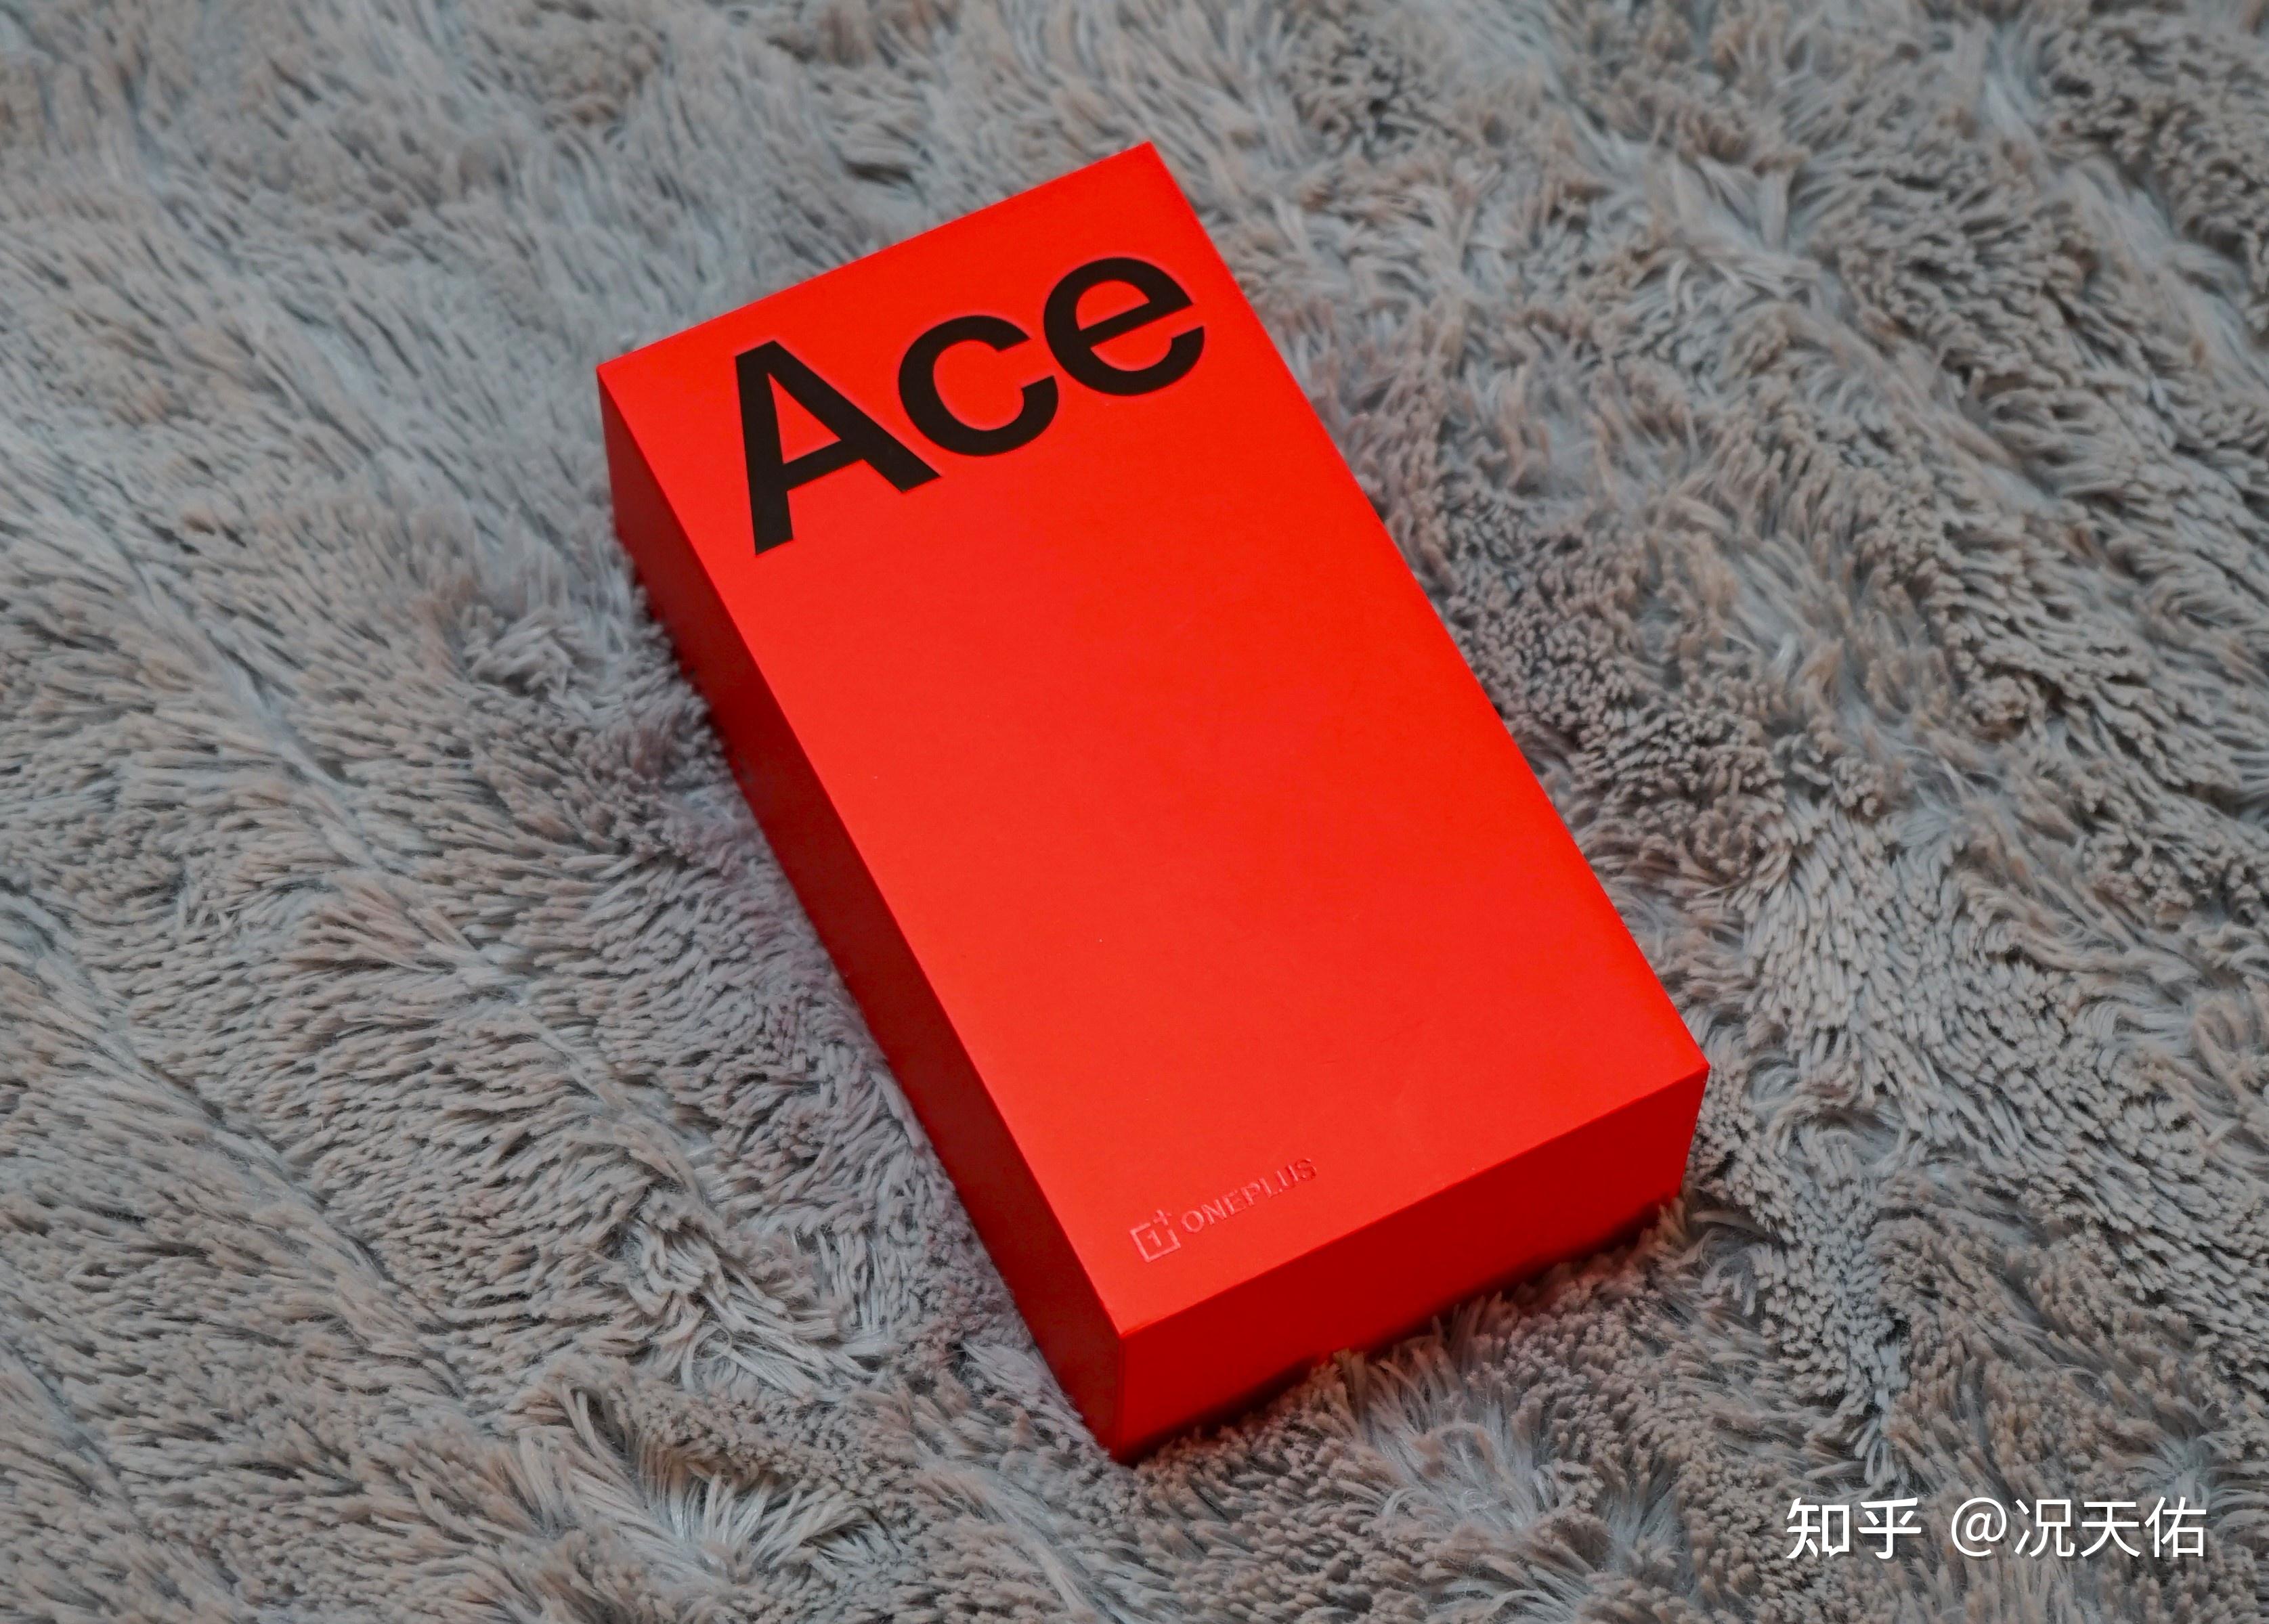 包装盒正面是ace系列字样,而侧边则标注了具体的手机型号一加 ace 2